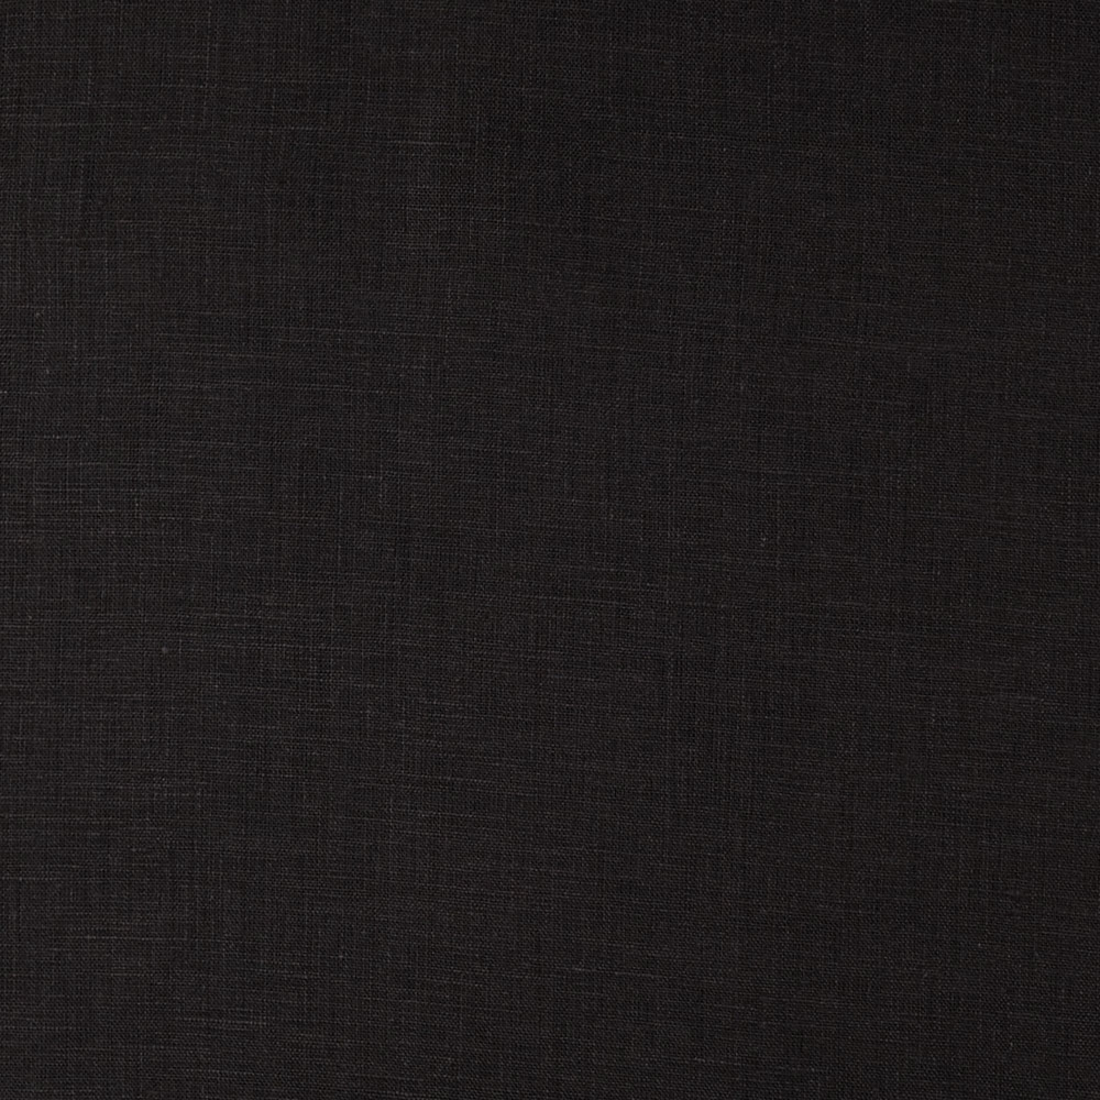 black lightweight linen Black linen remnant black linen 54 x 1 yard 22 Black Handkerchief Linen Remnant Lightweight linen